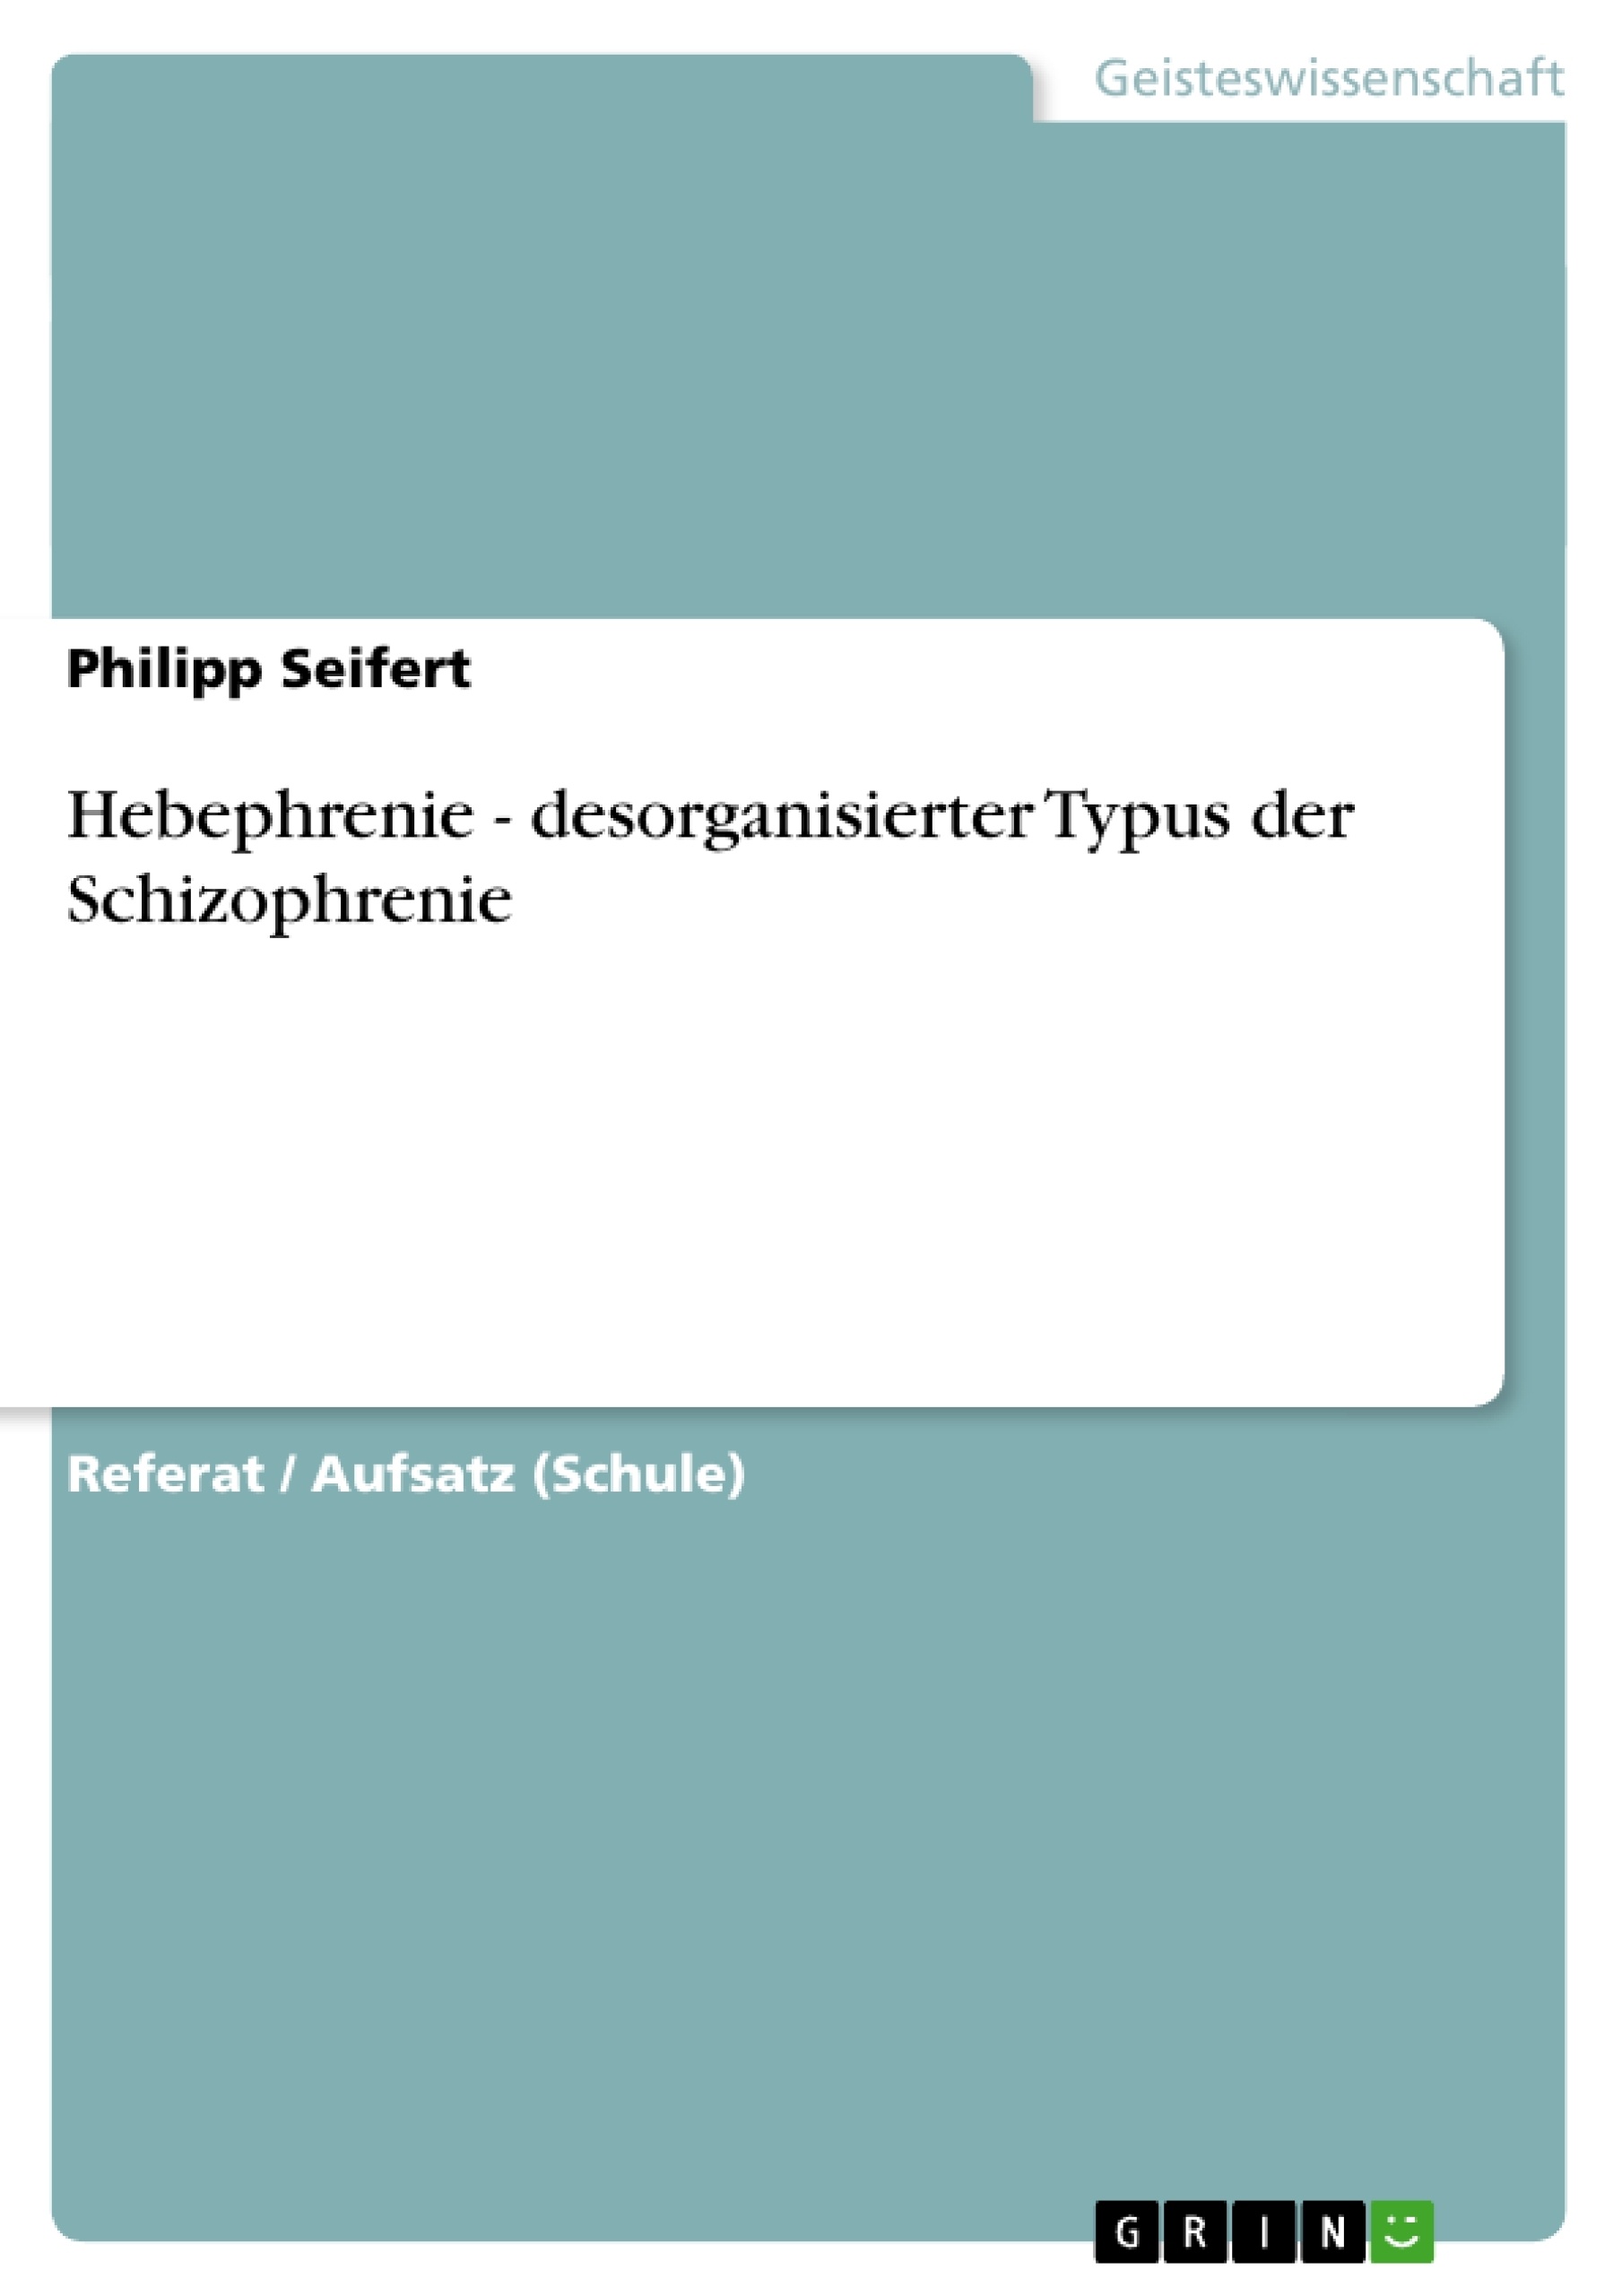 Title: Hebephrenie - desorganisierter Typus der Schizophrenie